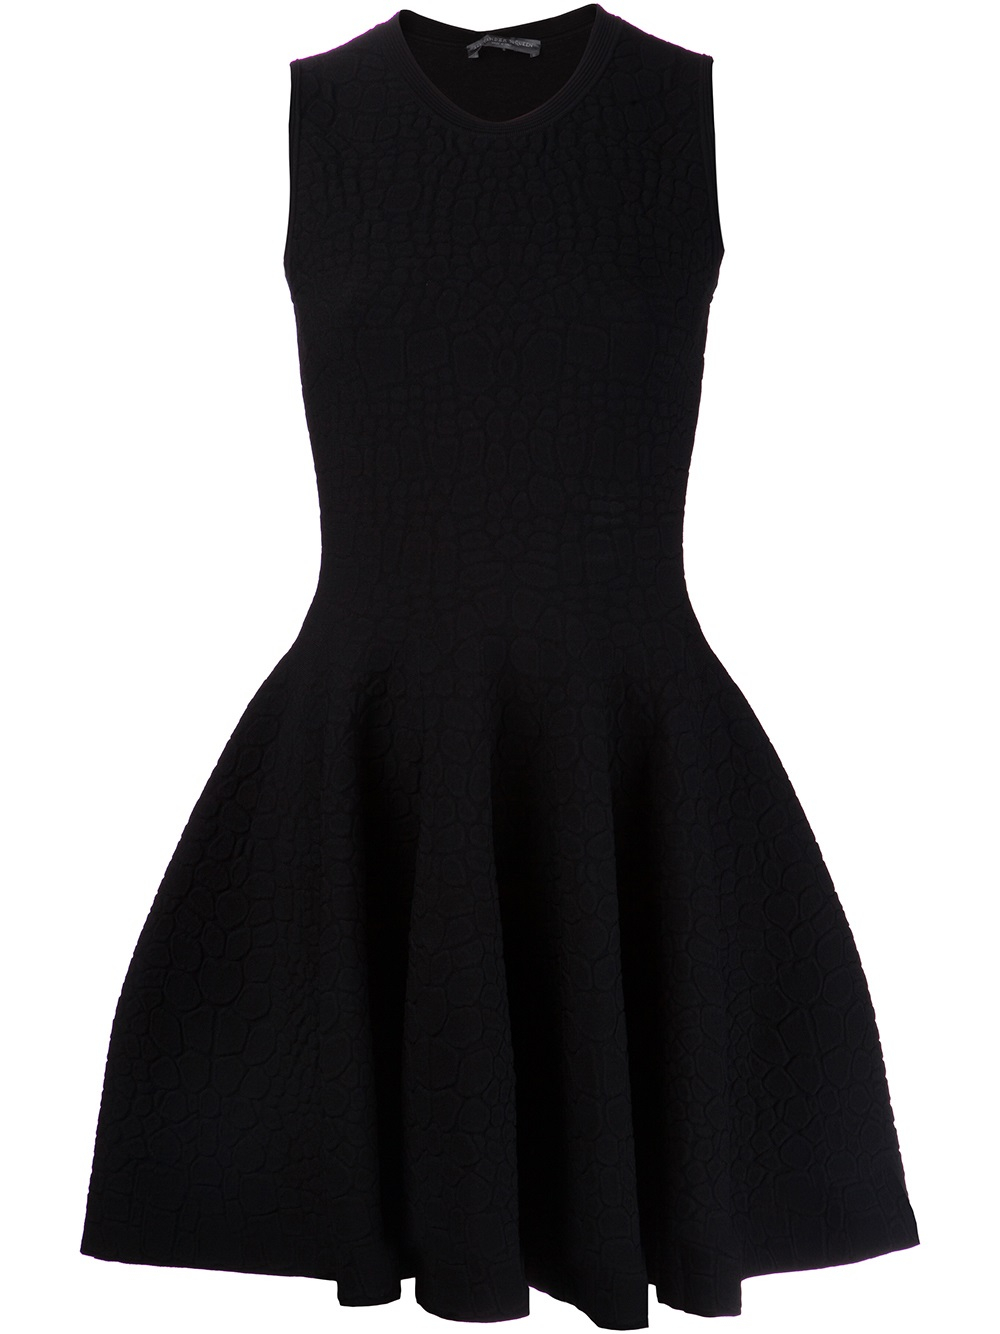 Alexander McQueen Pleated Dress in Black - Lyst